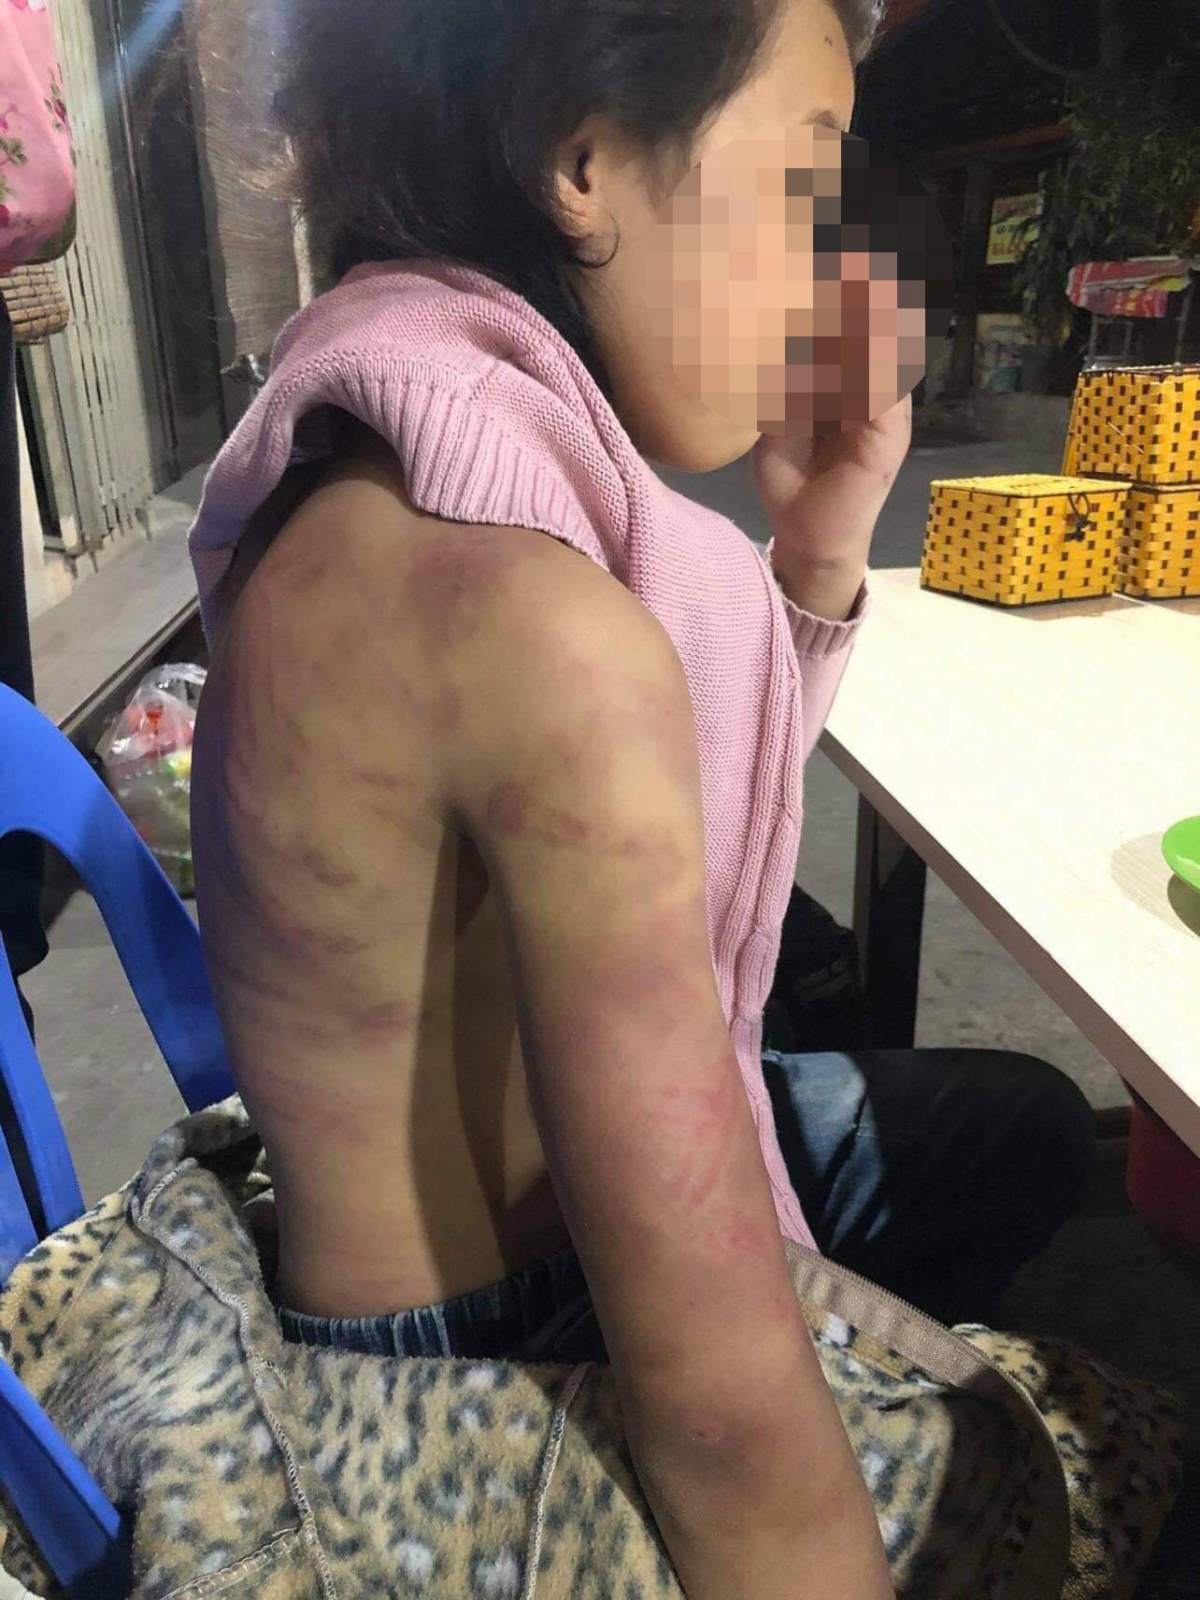 Bé gái 12 tuổi ở Hà Nội bị mẹ đẻ hành hạ dã man